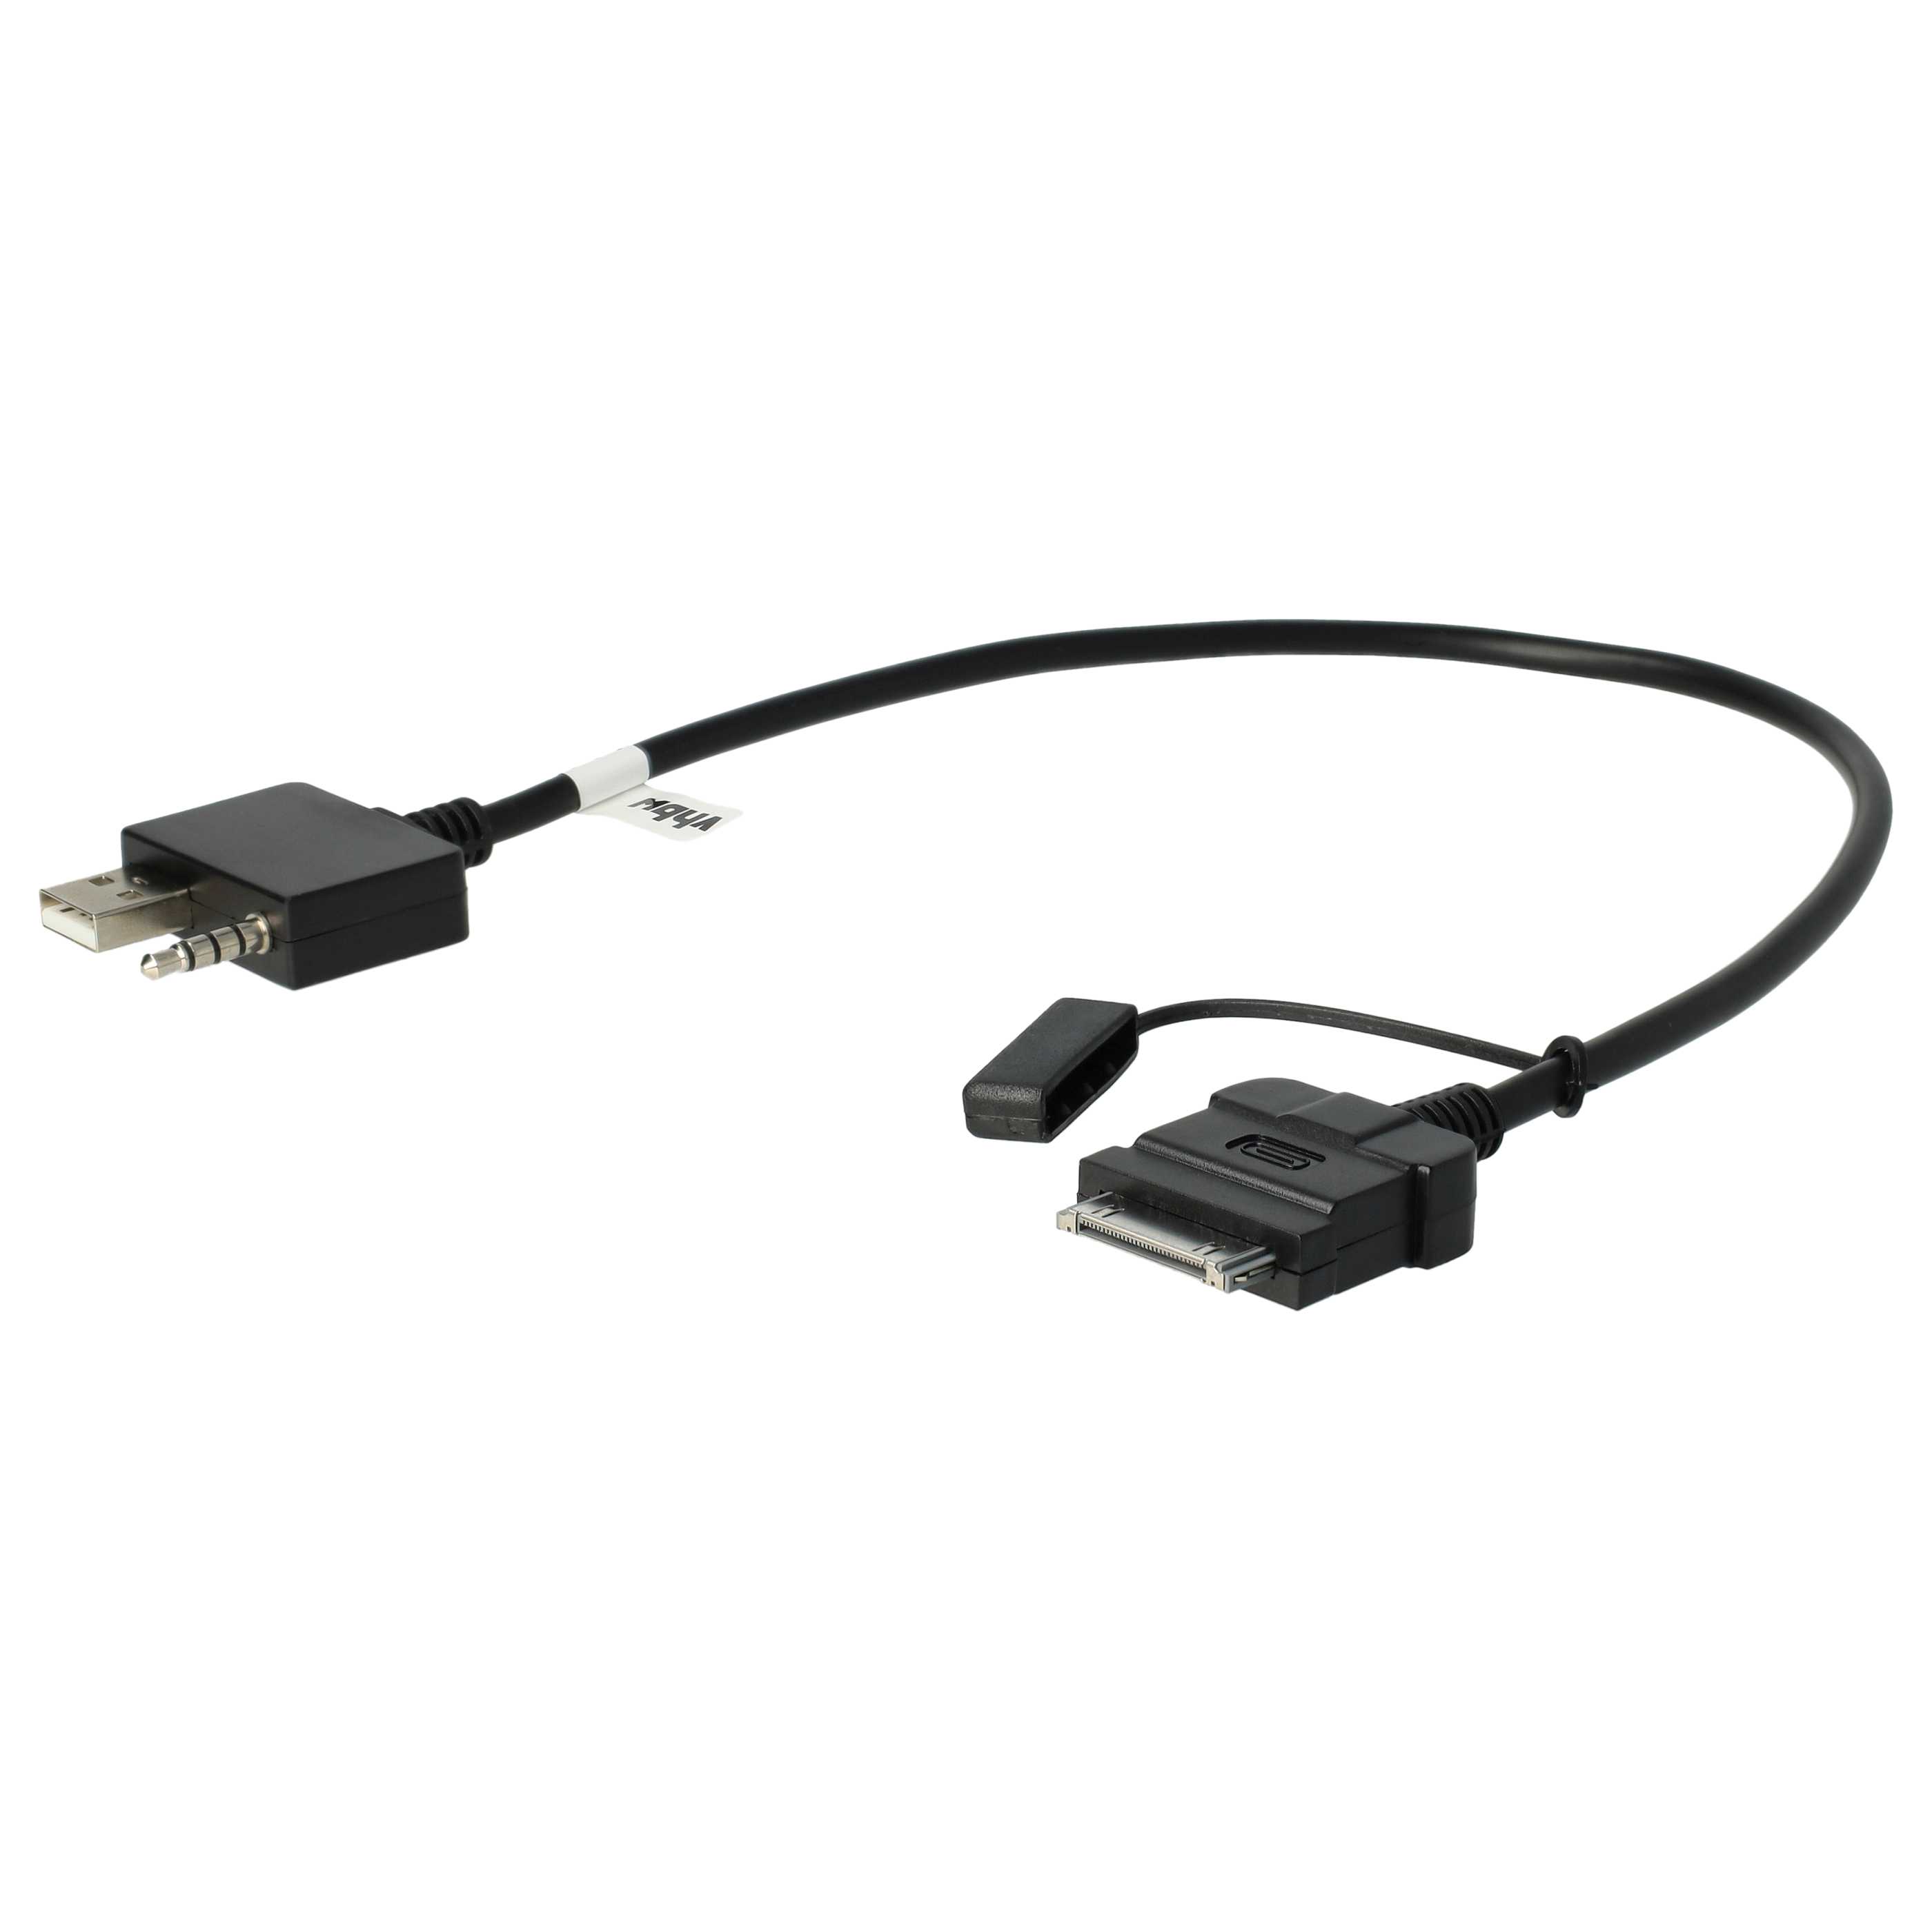 Kabel AUX do radia samochodowego Hyundai, Kia, Apple i in. zam. 9999Z-01160, 96125-1H500 - USB